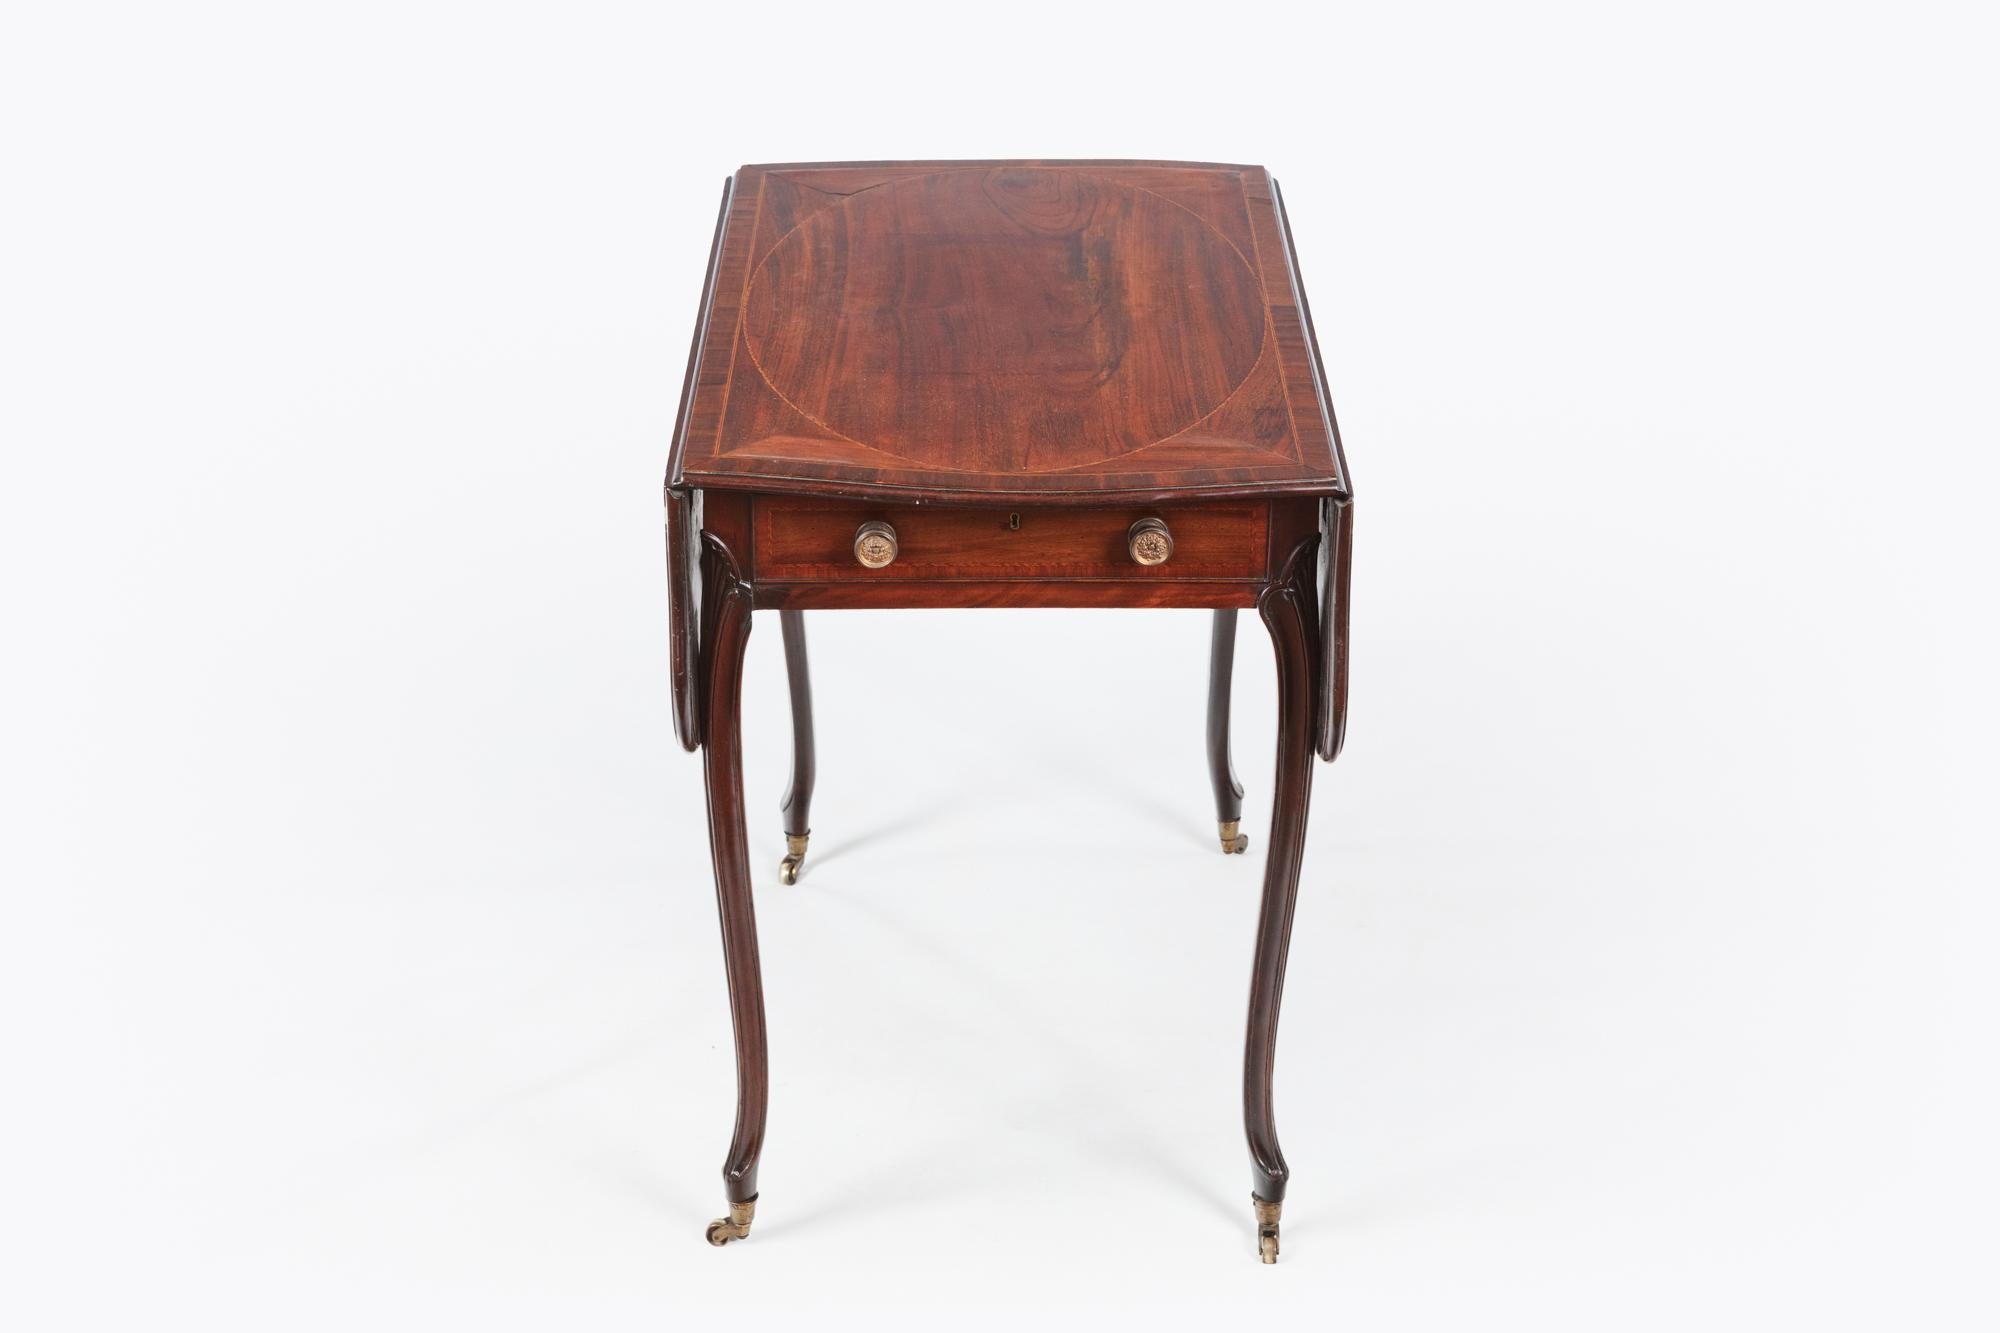 Pembroke-Tisch aus Mahagoni des späten 18. Jahrhunderts. Die schmetterlingsförmige Platte mit Satinholz-Querbändern über einer Friesschublade und einer gegenüberliegenden Scheinschublade steht auf fächerförmig geschnitzten Kabriole-Beinen, die in